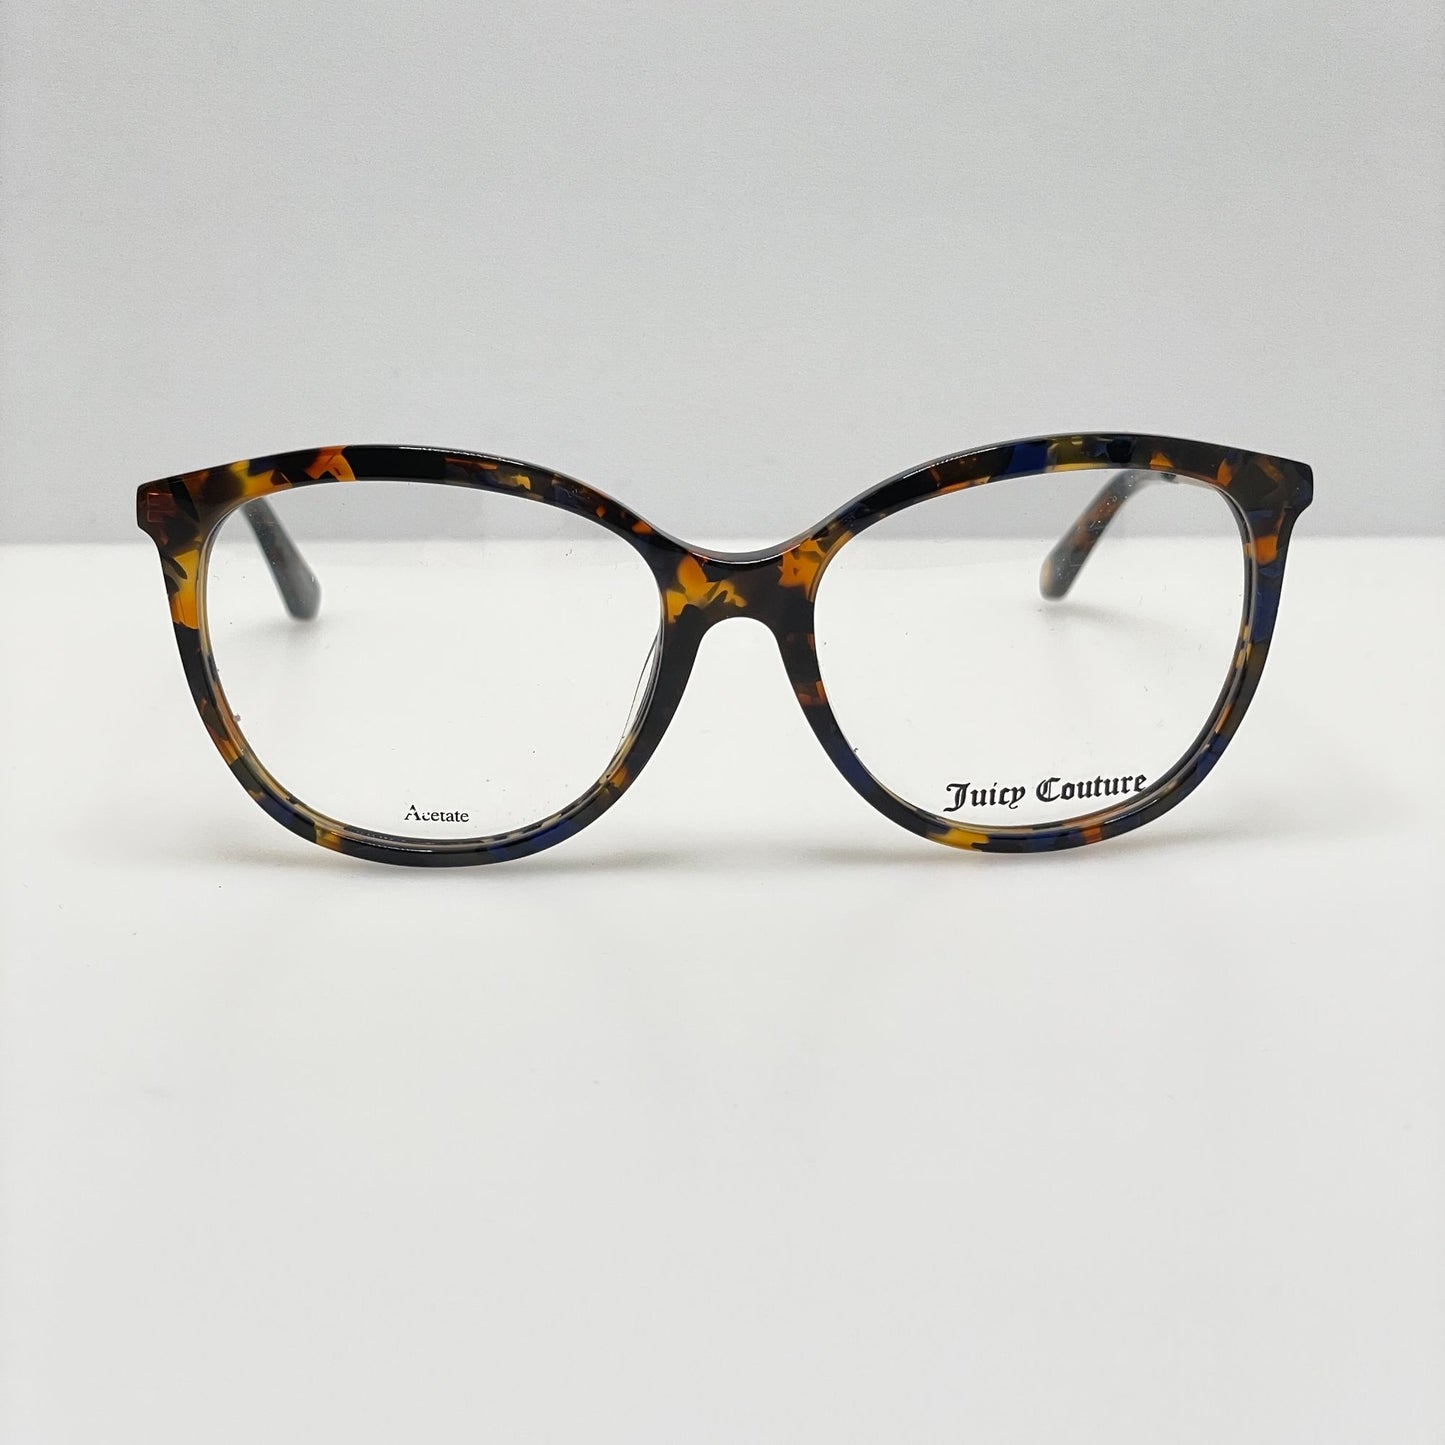 Juicy Couture Eye Glasses Eyeglasses Frames JU 167 IPR 52-16-135